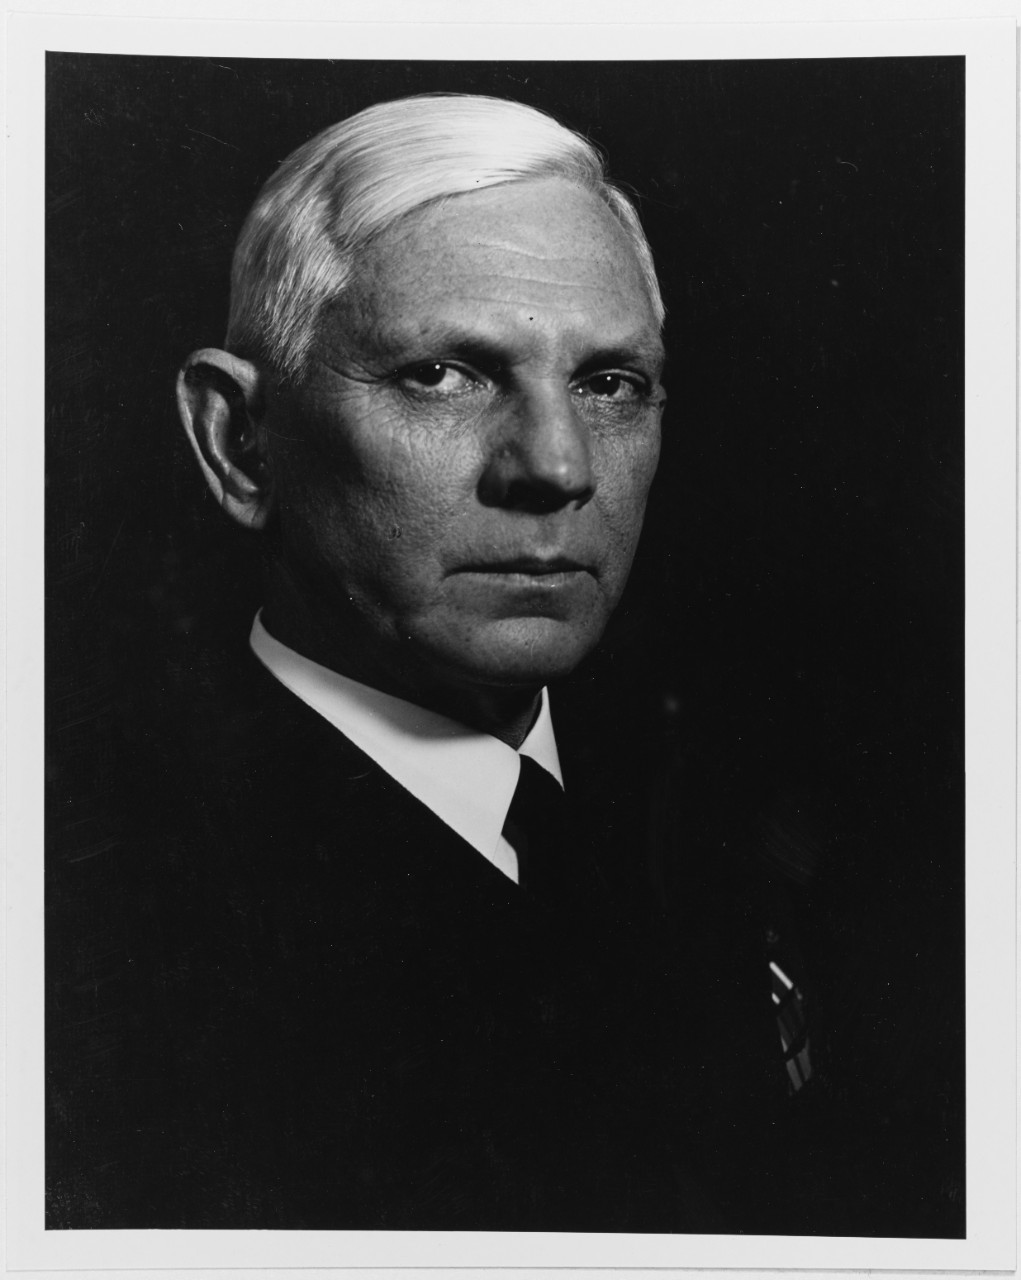 Vice Admiral Carl H. Jones, USN.